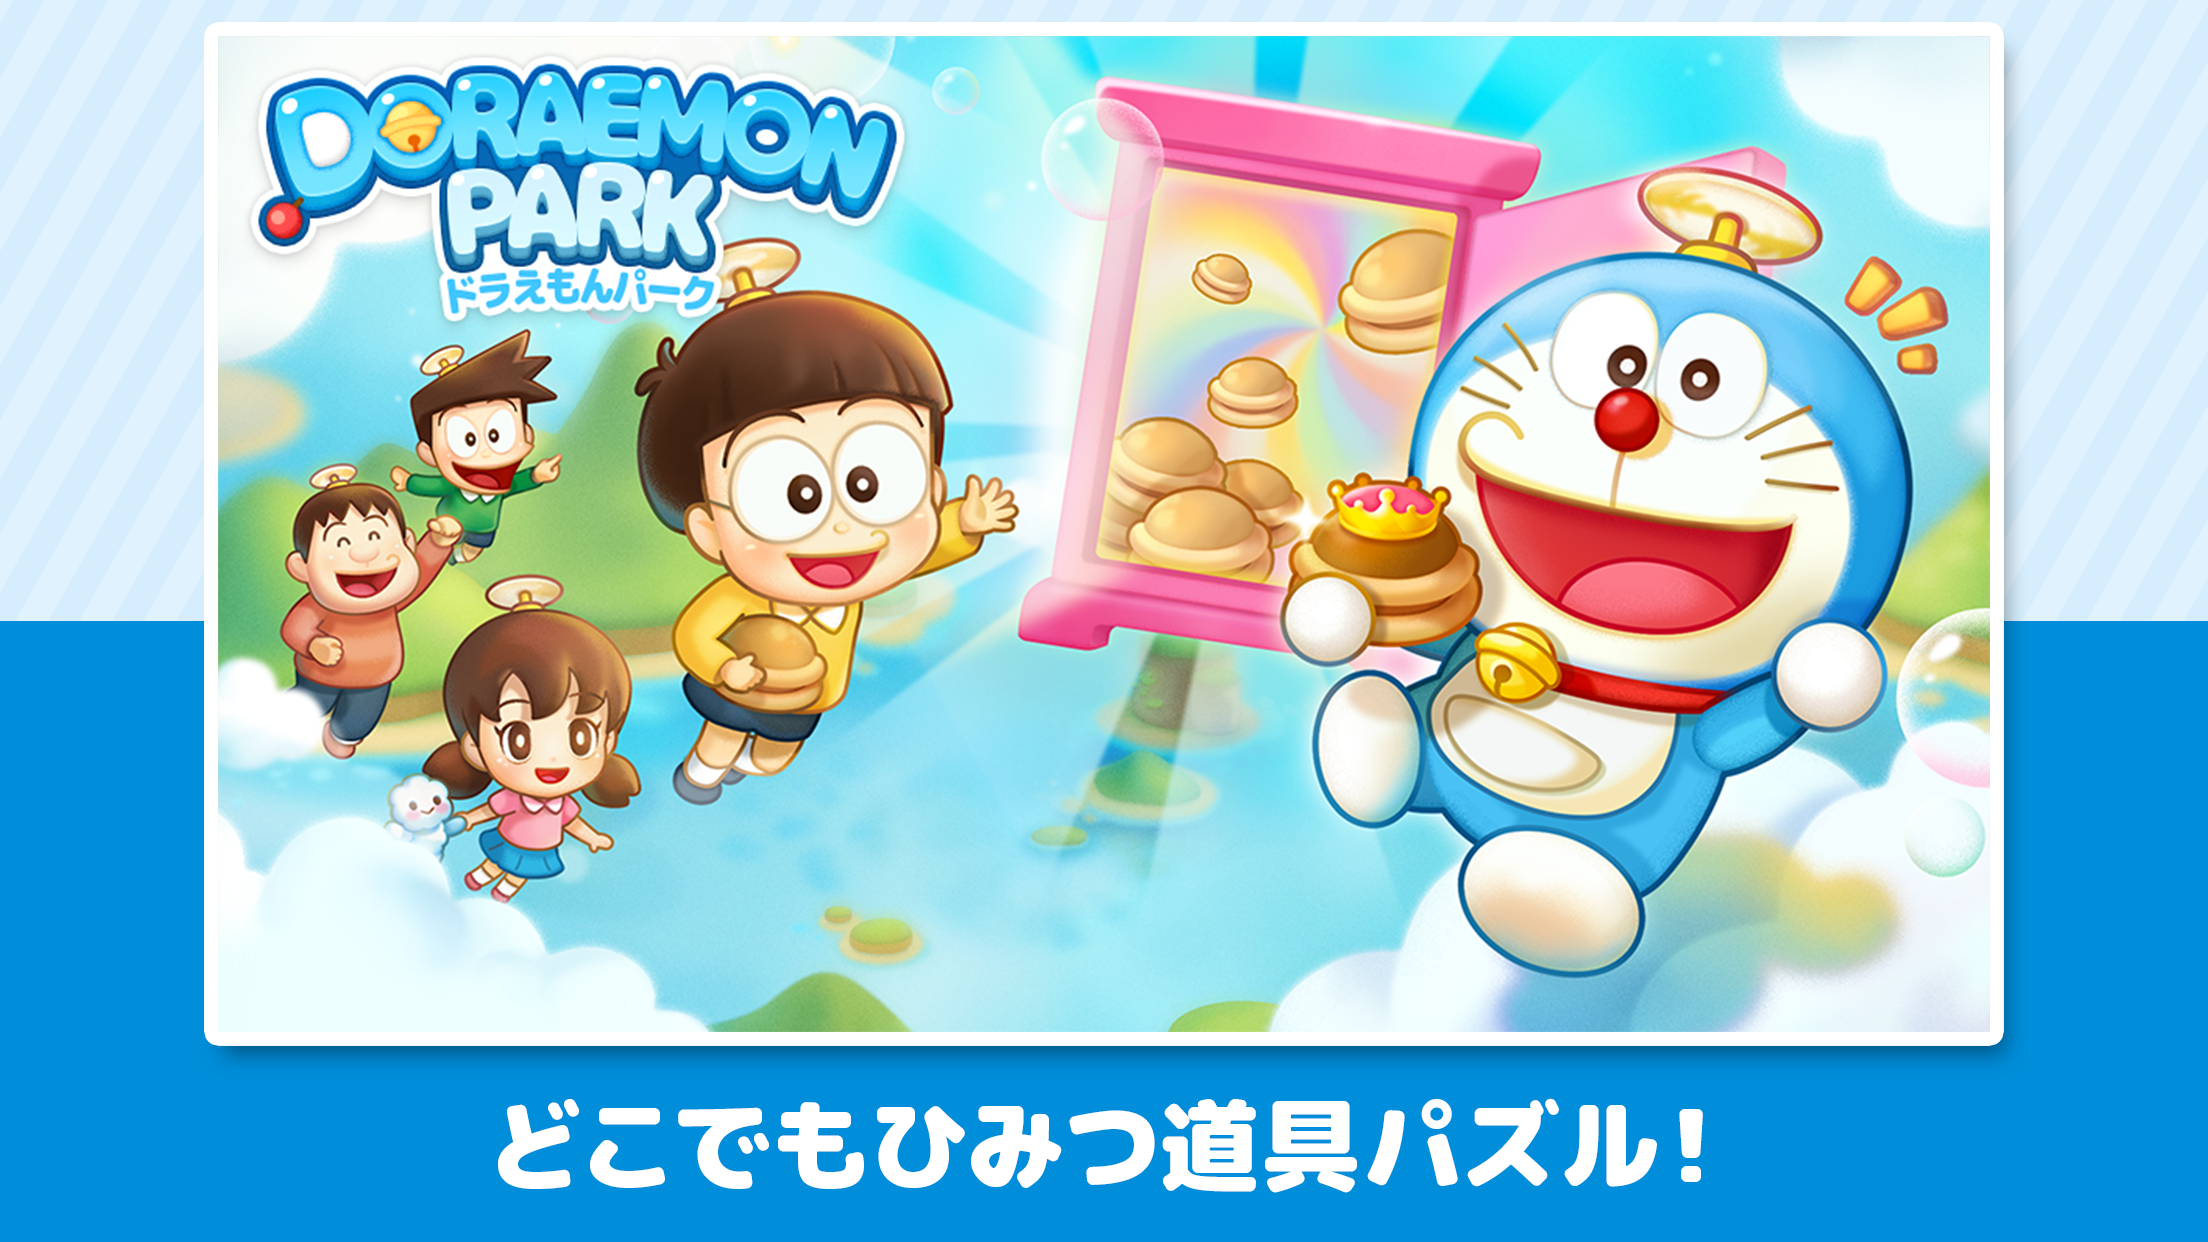 Screenshot 1 of LINE: Công viên Doraemon 2.7.0